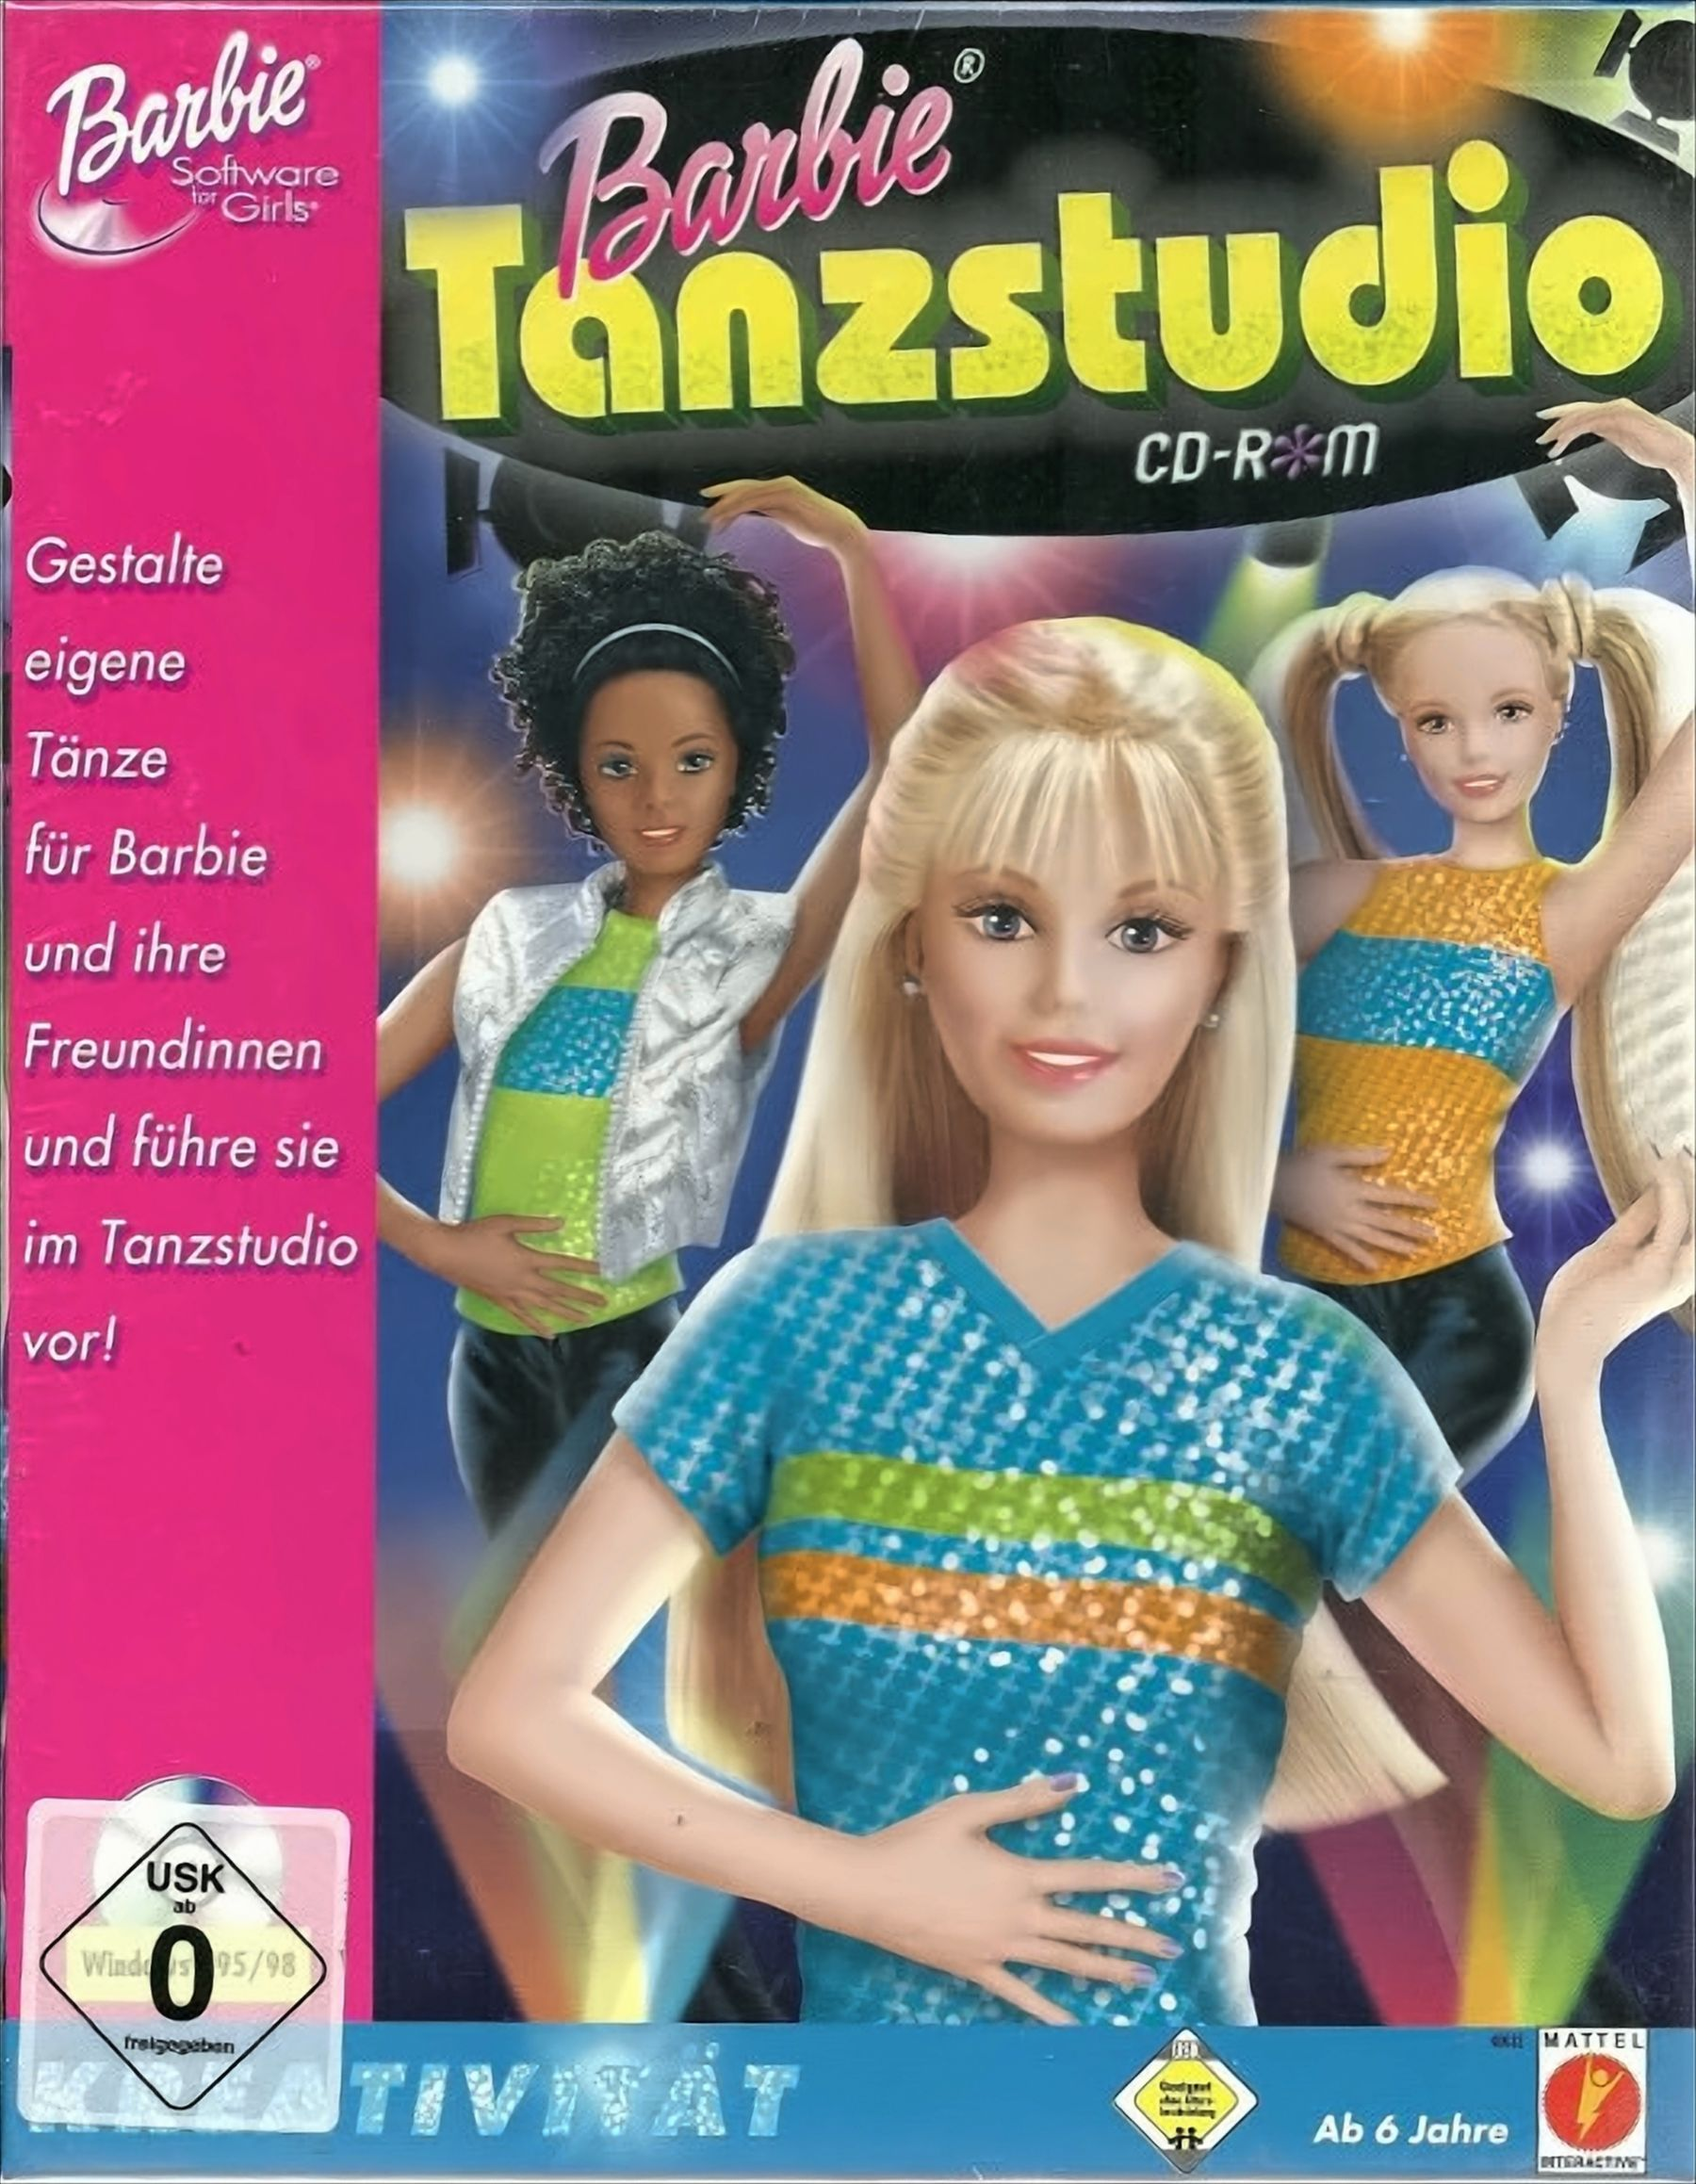 Barbie - Tanzstudio - [PC